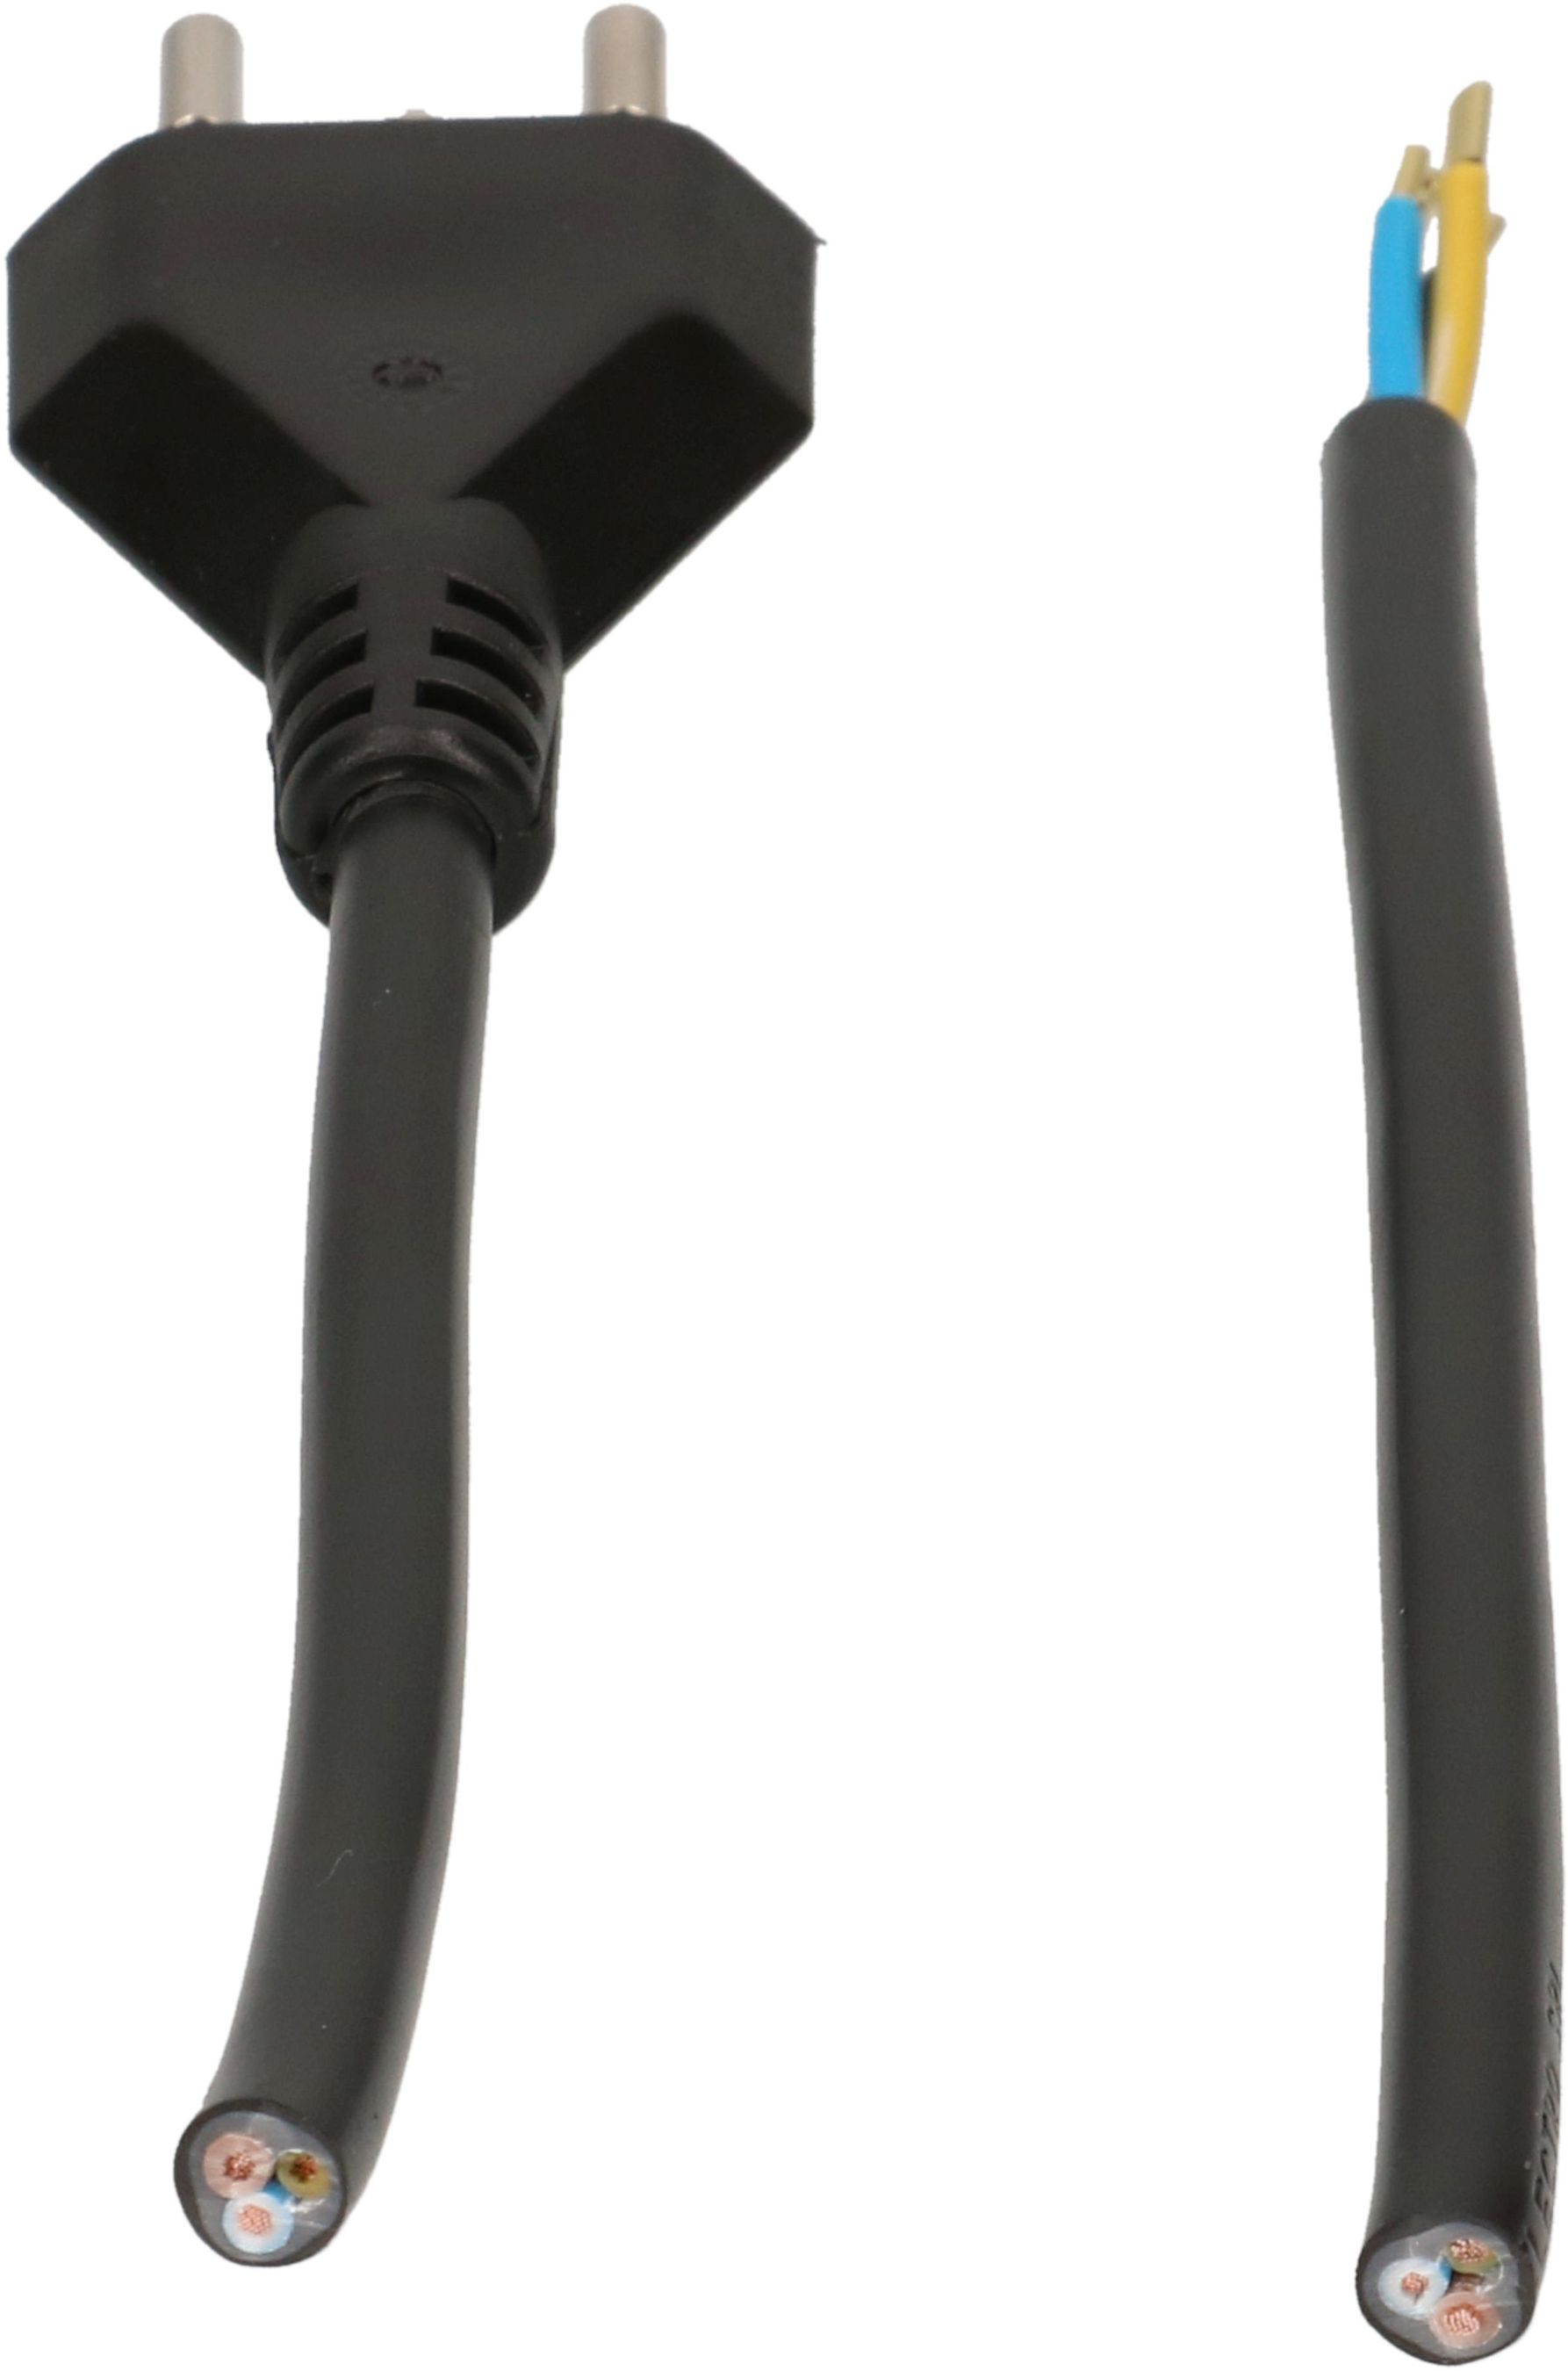 TD câble secteur H05VV-F3G1.5 3m noir type 12